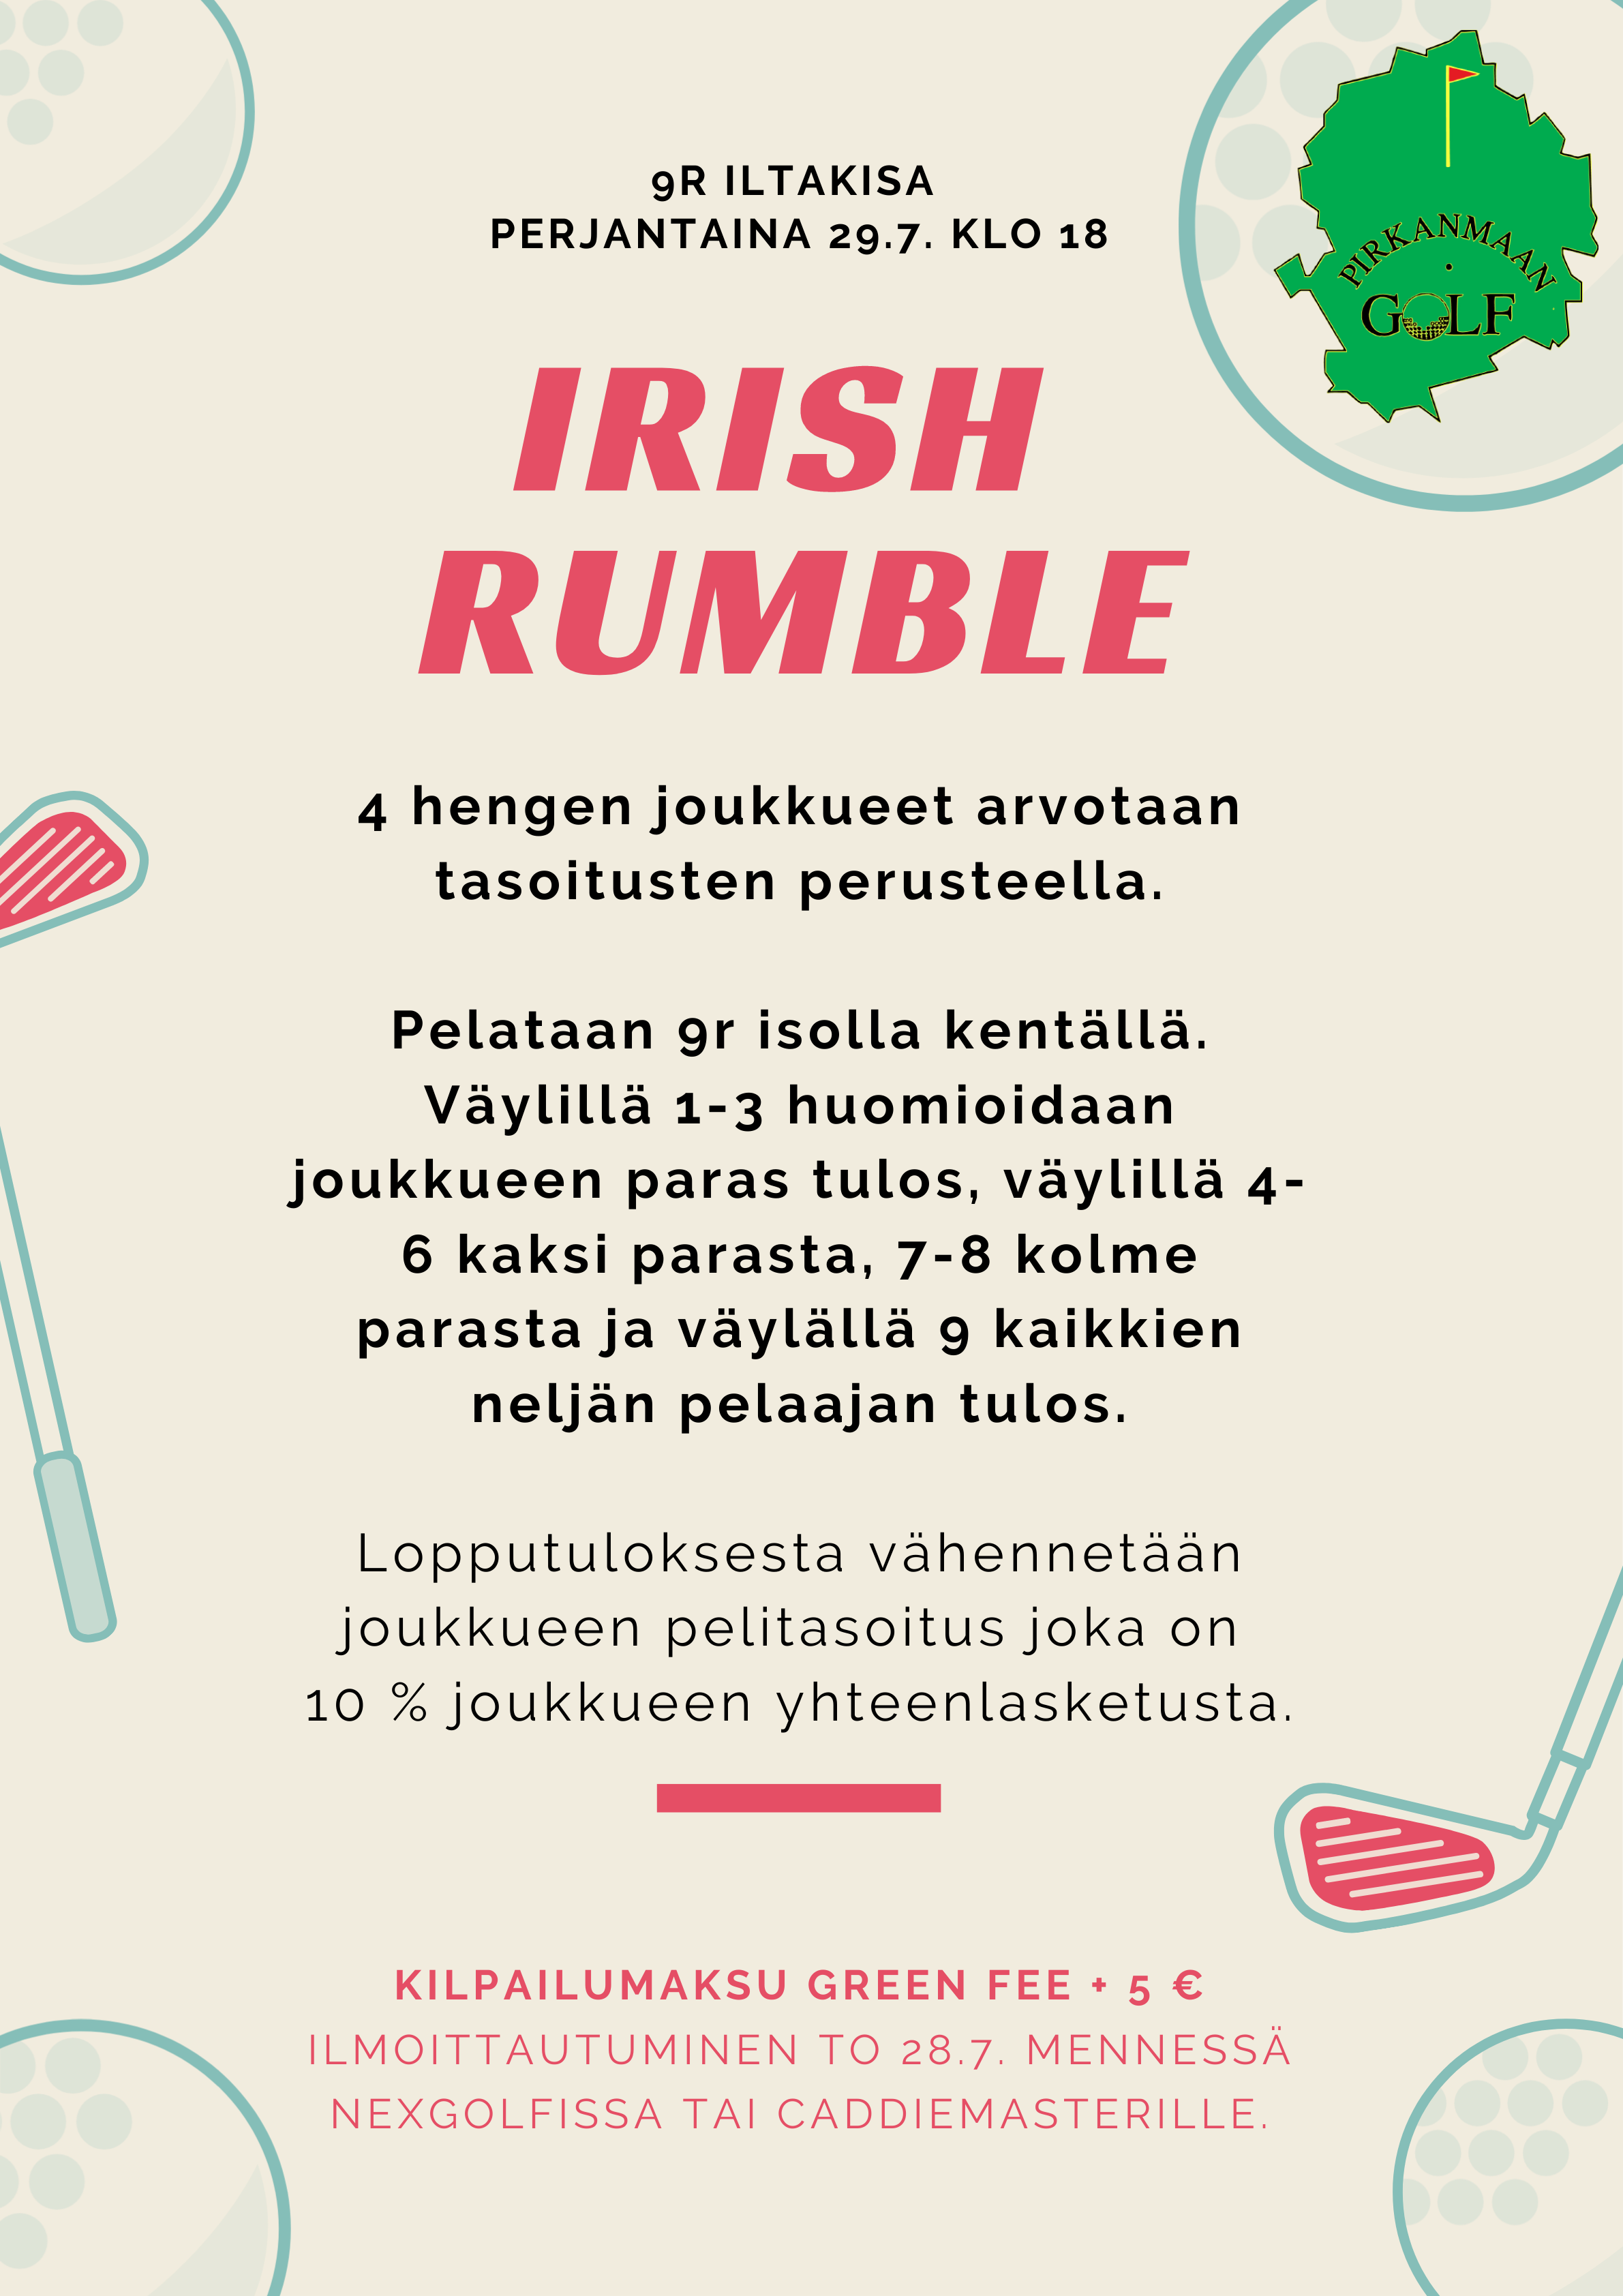 Irish Rumble 29